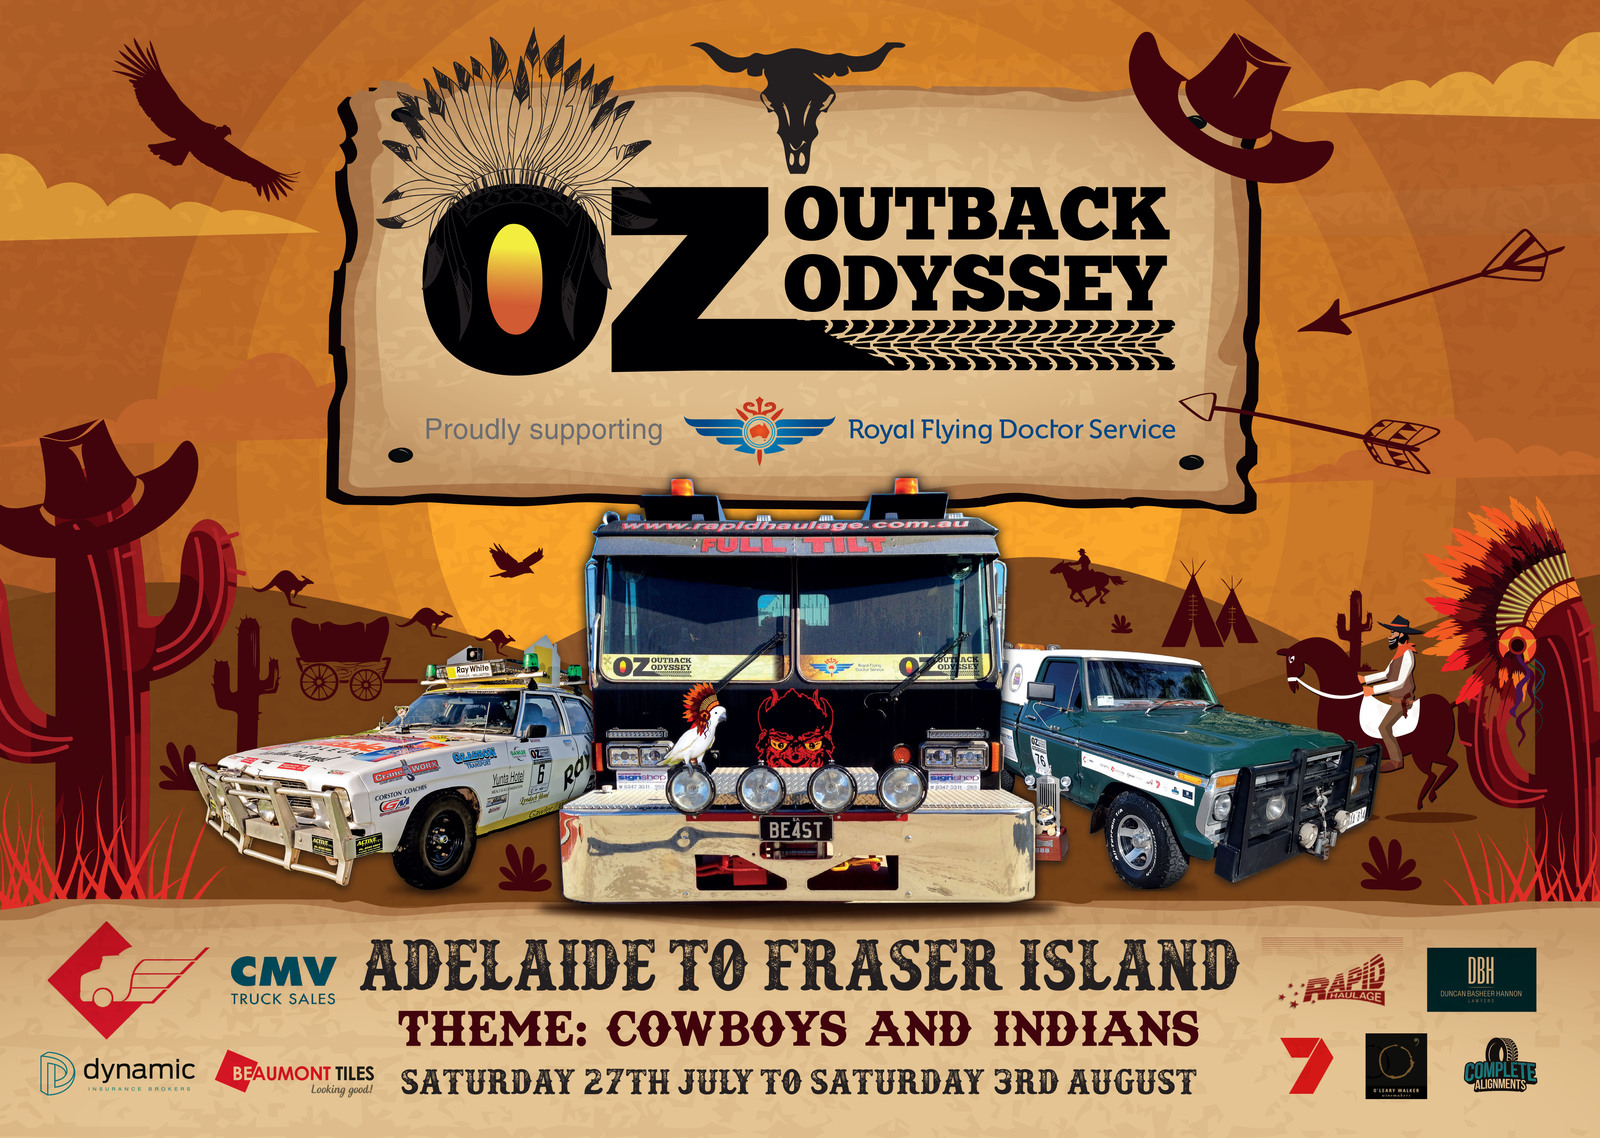 2019 Poster - Adelaide to Fraiser Island